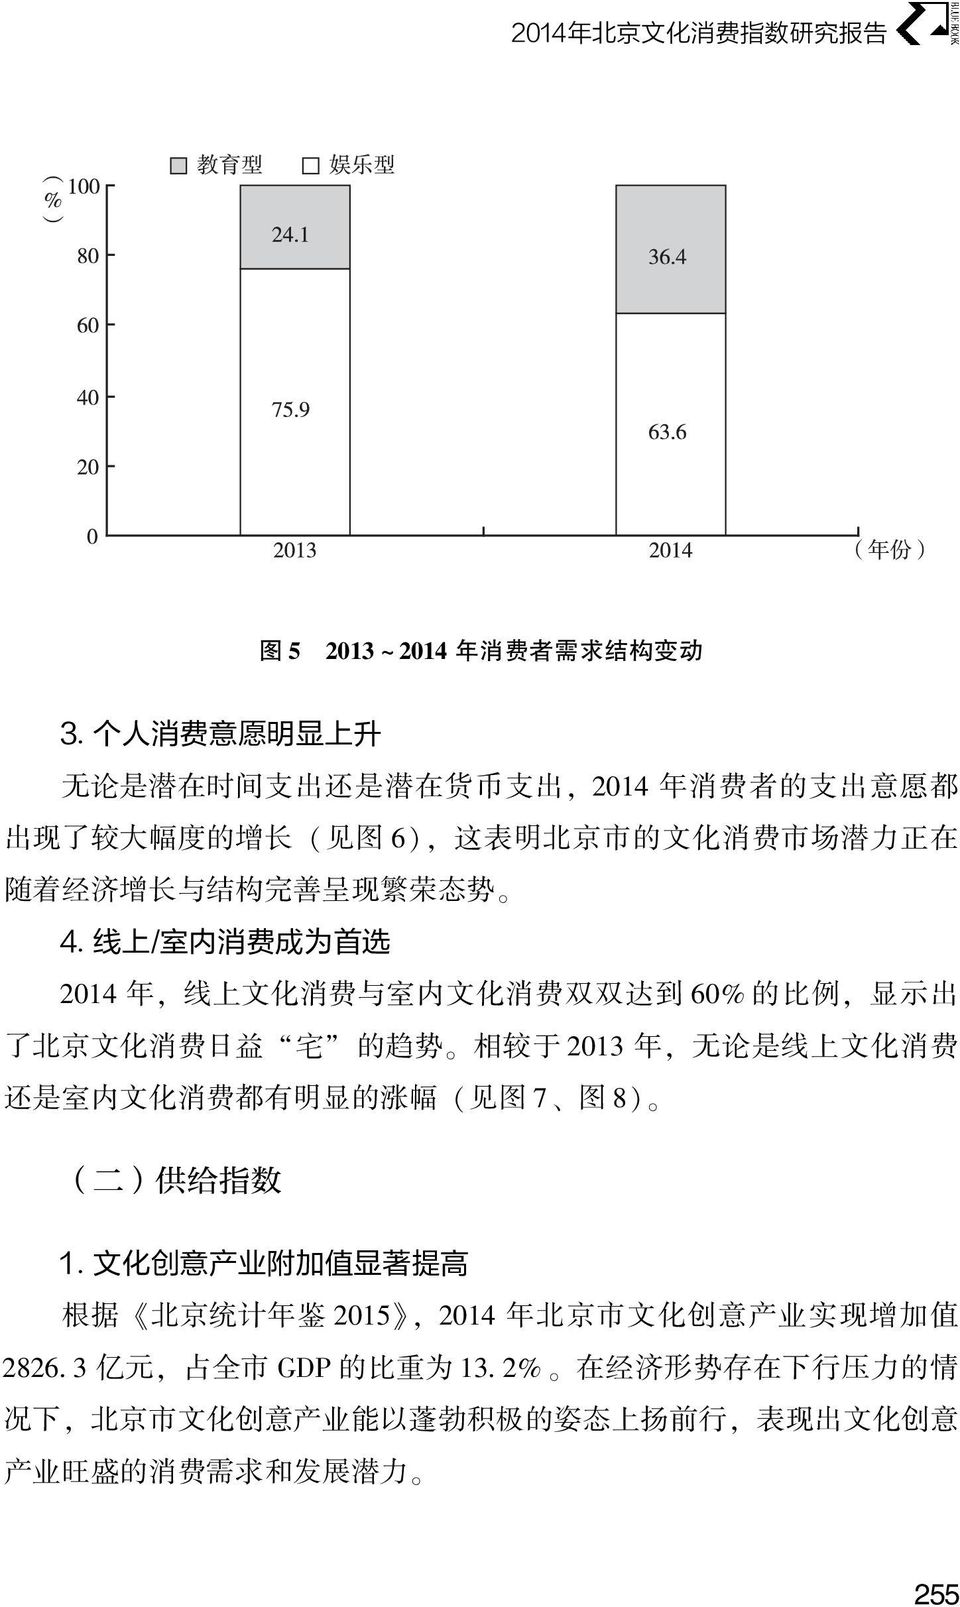 费 日 益 宅 的 趋 势 相 较 于 2013 年, 无 论 是 线 上 文 化 消 费 还 是 室 内 文 化 消 费 都 有 明 显 的 涨 幅 ( 见 图 7 图 8) ( 二 ) 供 给 指 数 1 文 化 创 意 产 业 附 加 值 显 著 提 高 根 据 北 京 统 计 年 鉴 2015, 2014 年 北 京 市 文 化 创